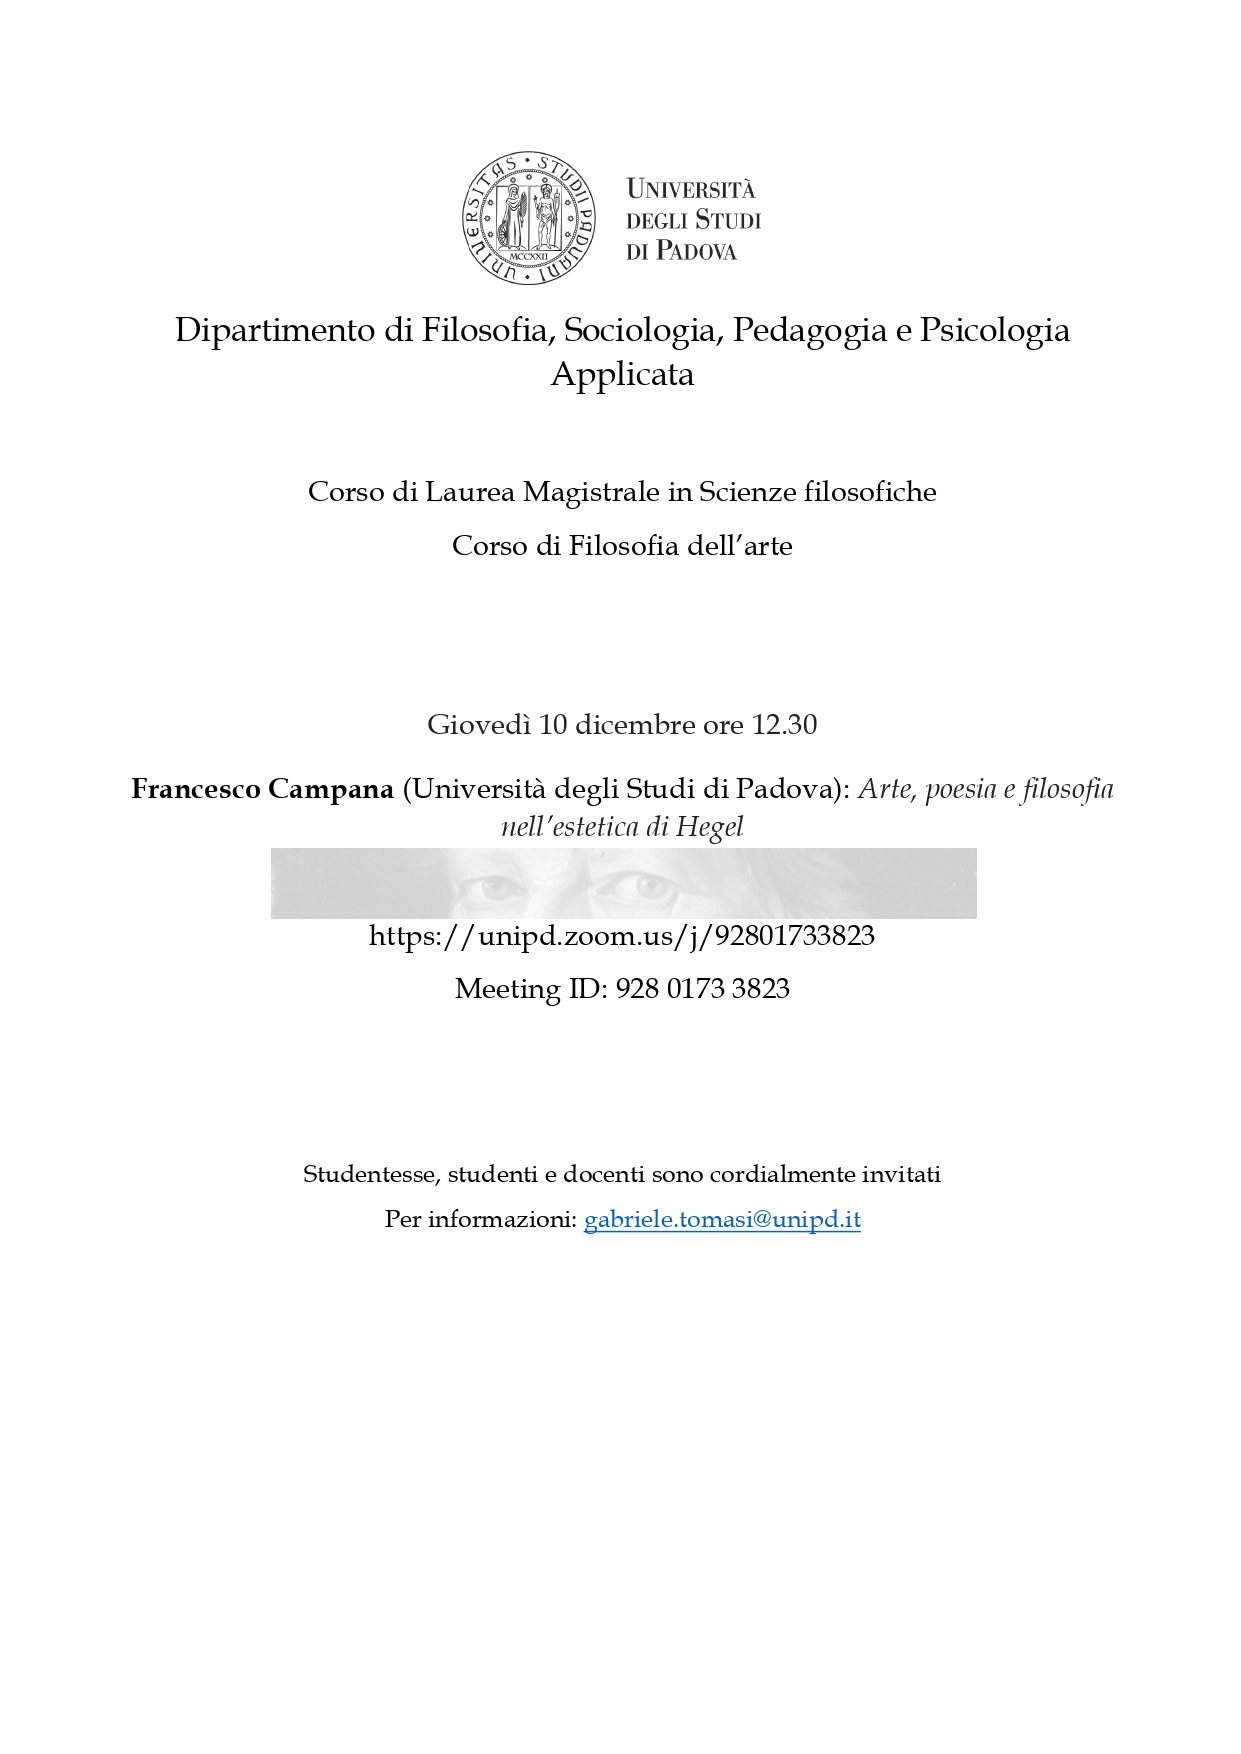 Lecture: Francesco Campana, “Arte, poesia e filosofia nell’estetica di Hegel” (Padova, 10 December 2020)